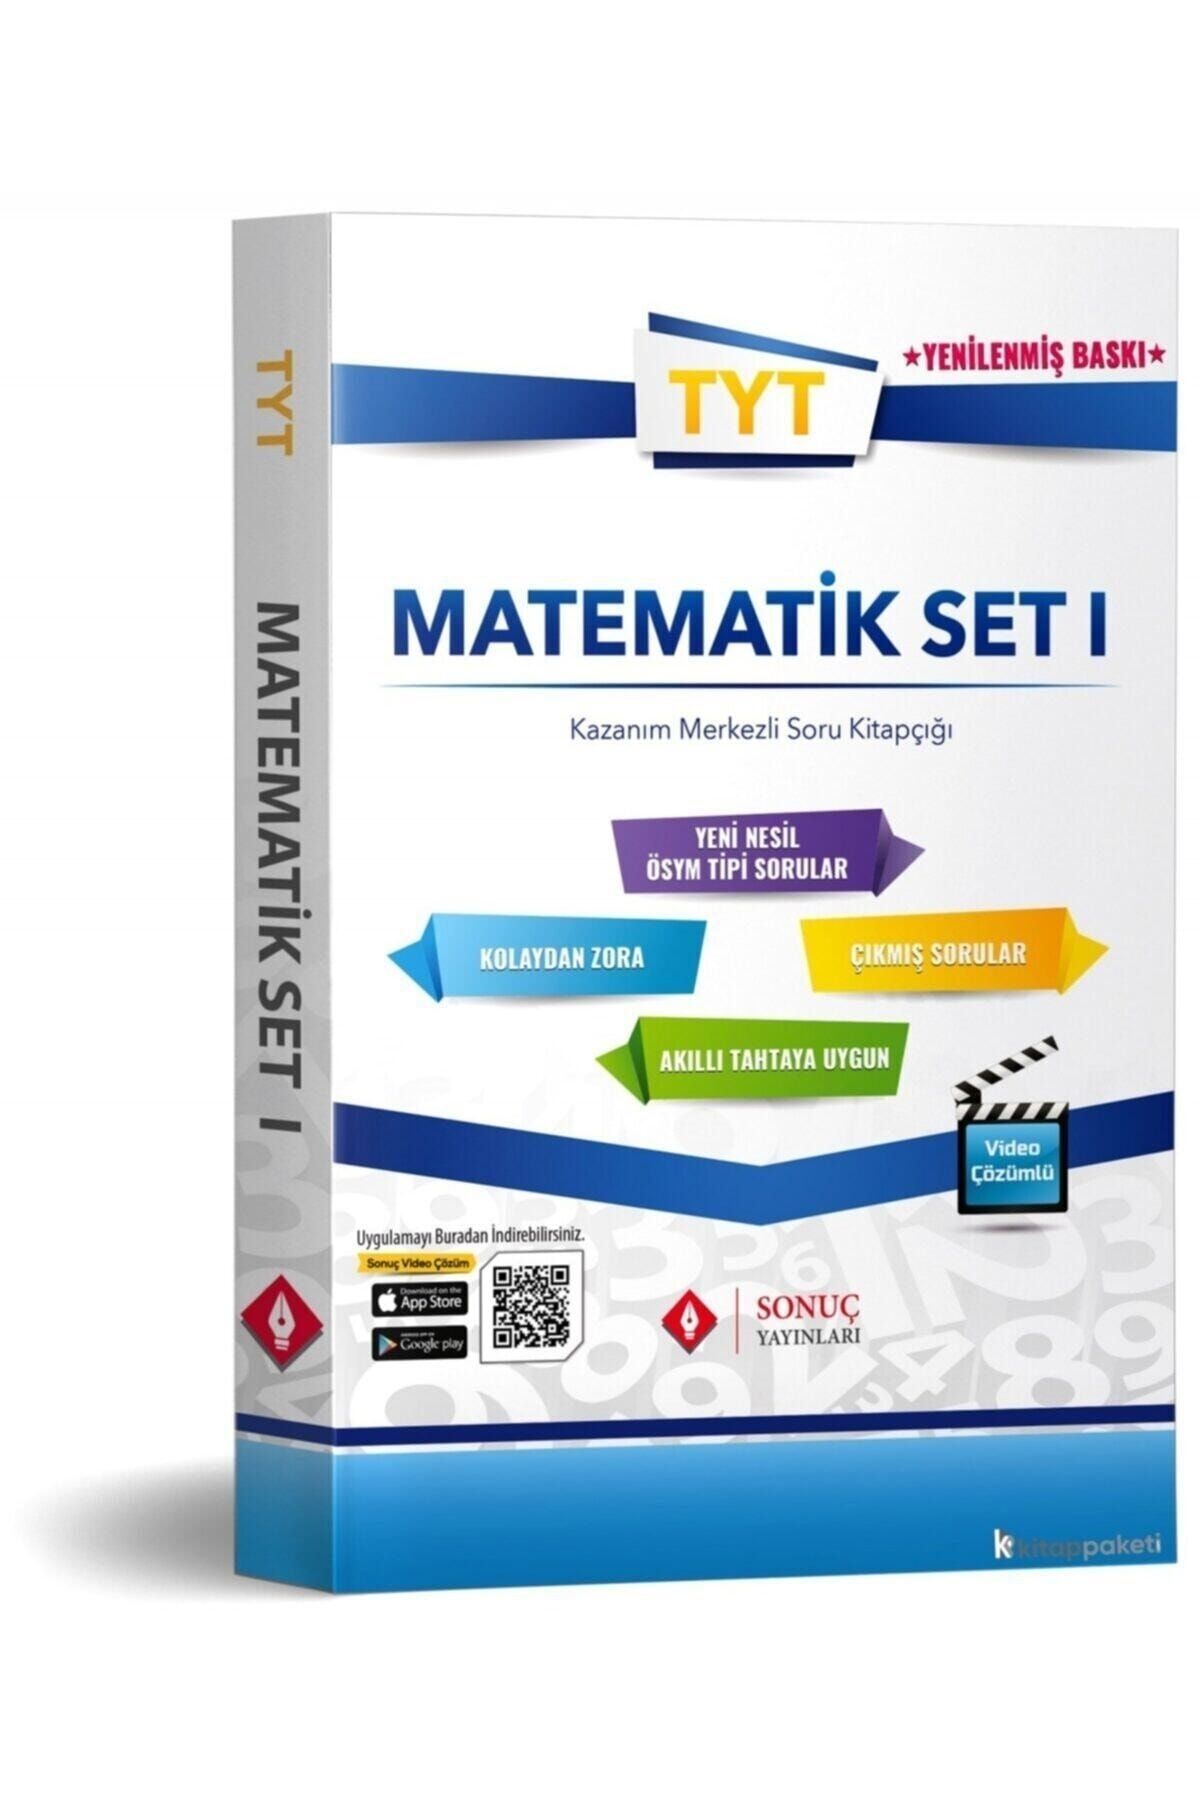 Sonuç Yayınları Tyt Matematik Set 1 Kazanım Merkezli Soru Kitapçığı 0.45